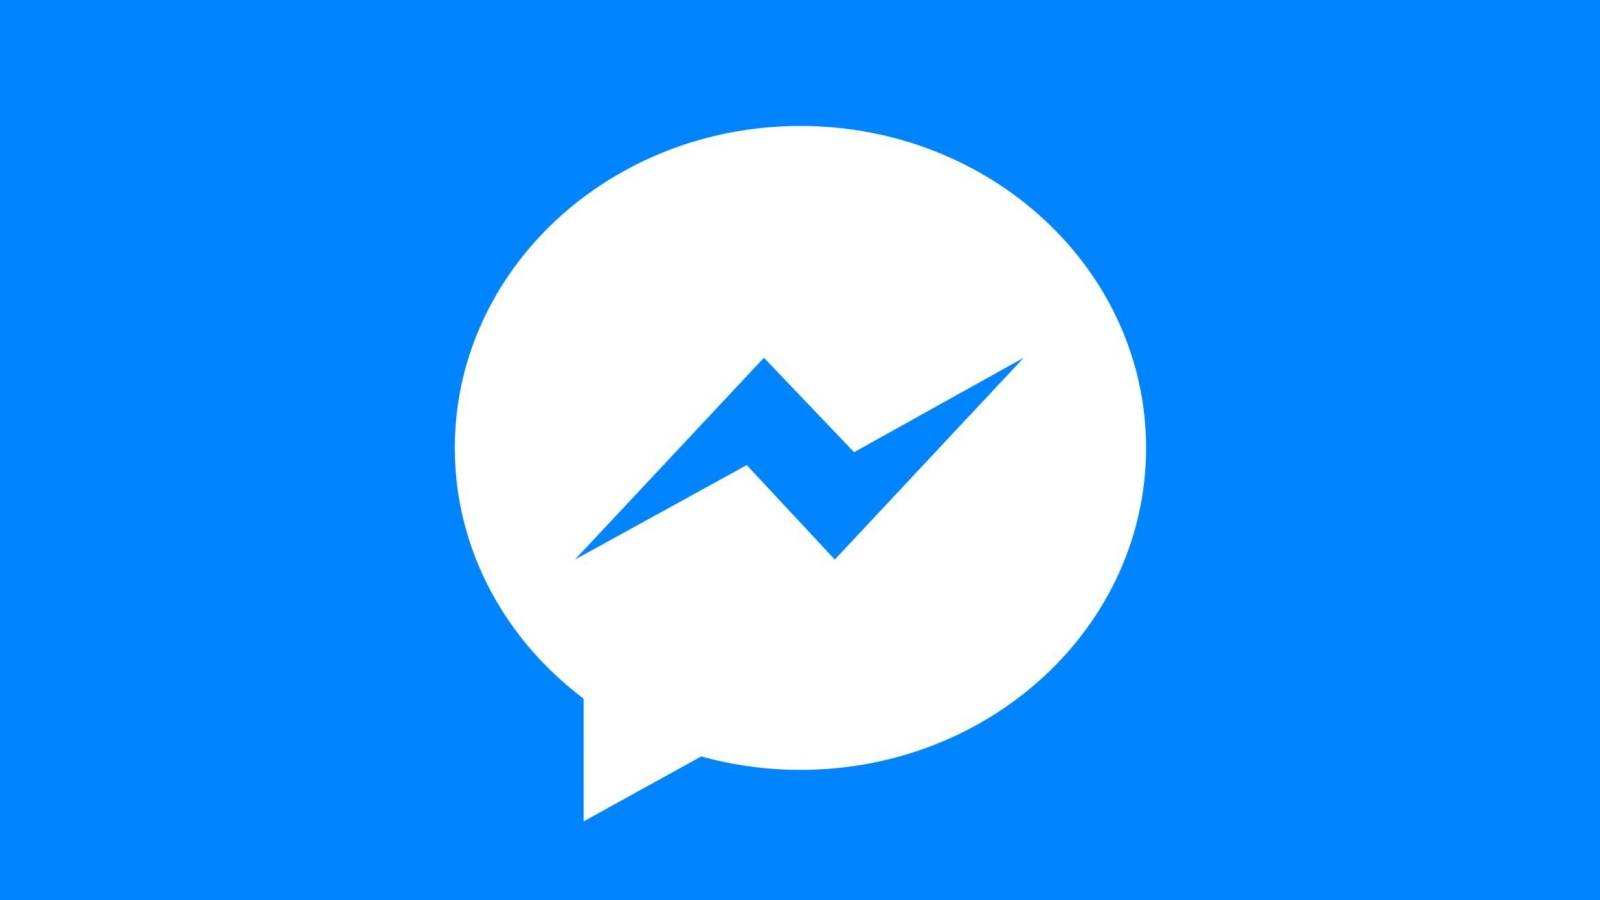 Facebook Messenger met à jour les téléphones disponibles